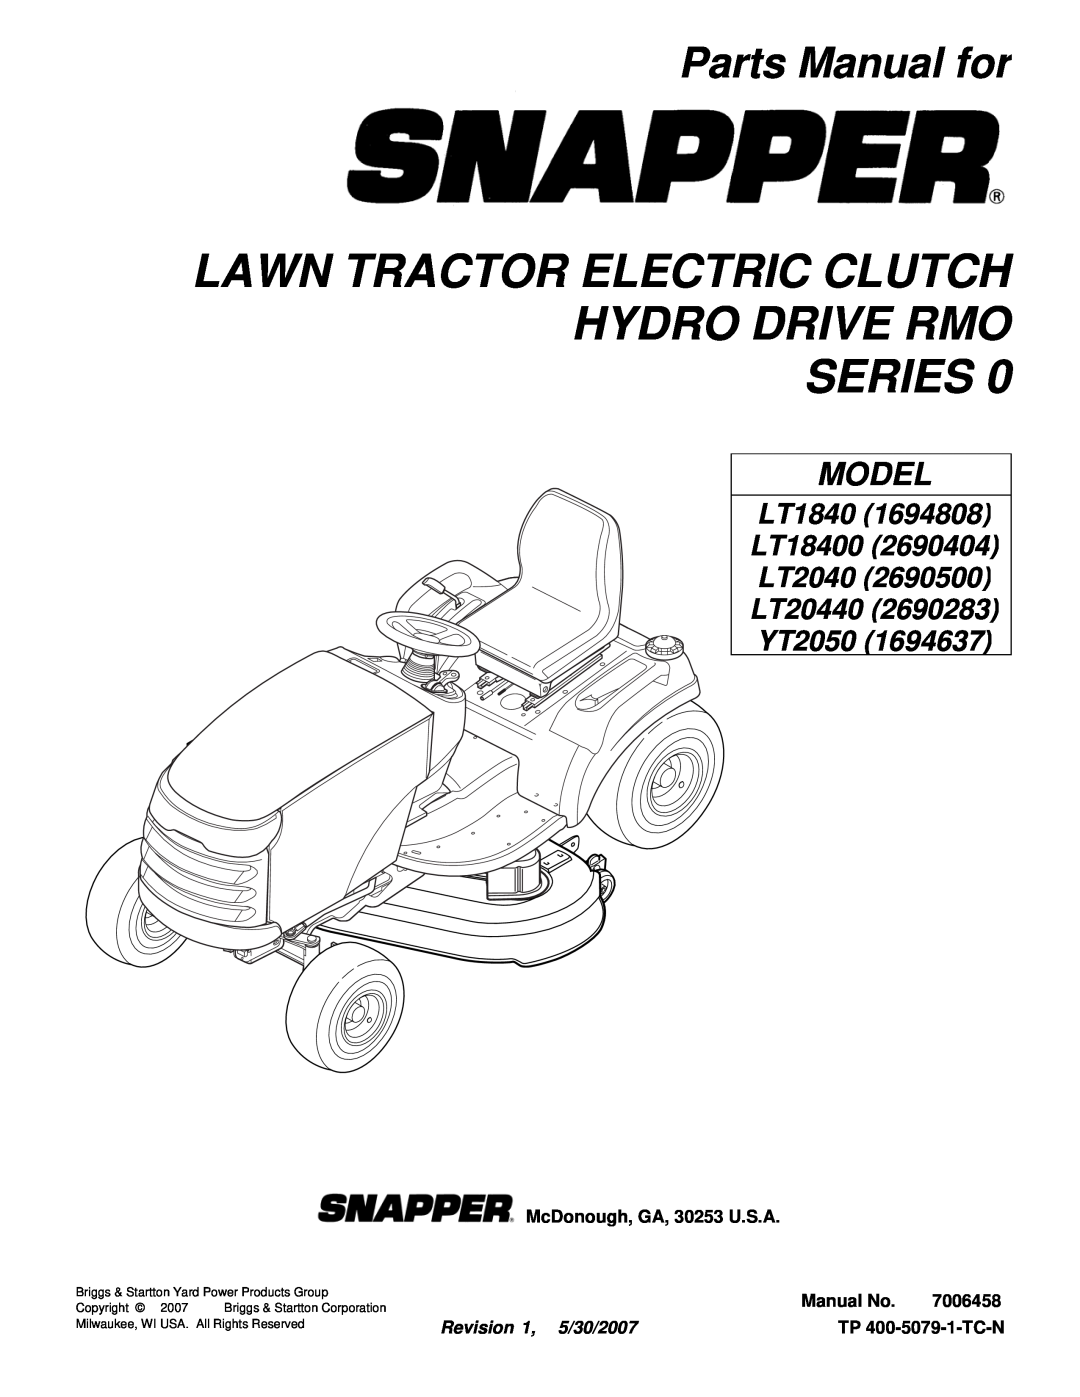 Snapper LT20440 (2690283) manual Parts Manual for, Model, LT1840 LT18400 LT2040 LT20440 YT2050, McDonough, GA, 30253 U.S.A 